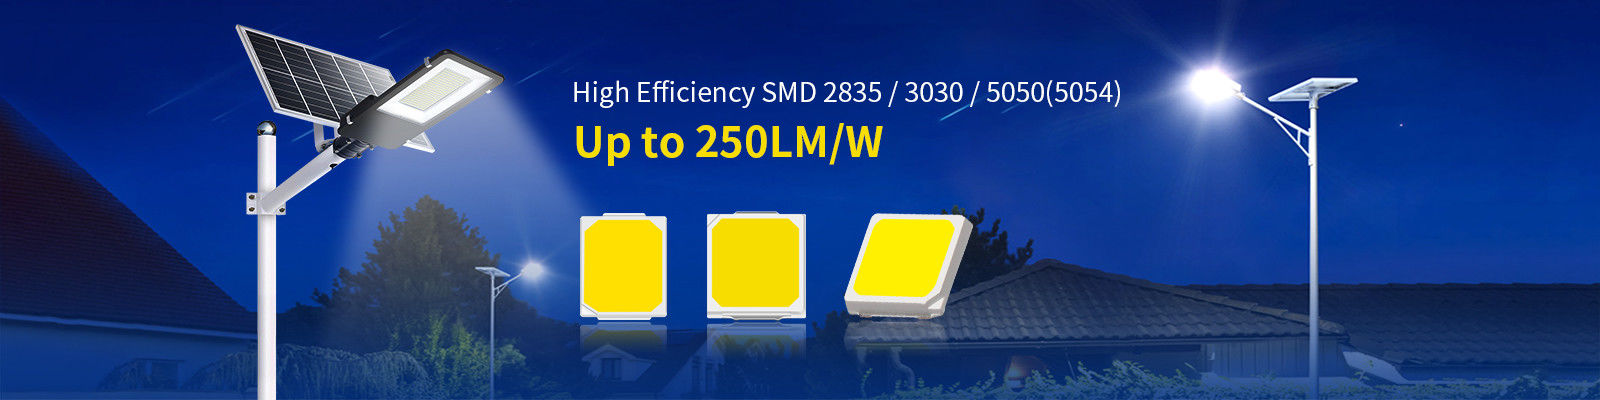 5050 SMD LED Chip